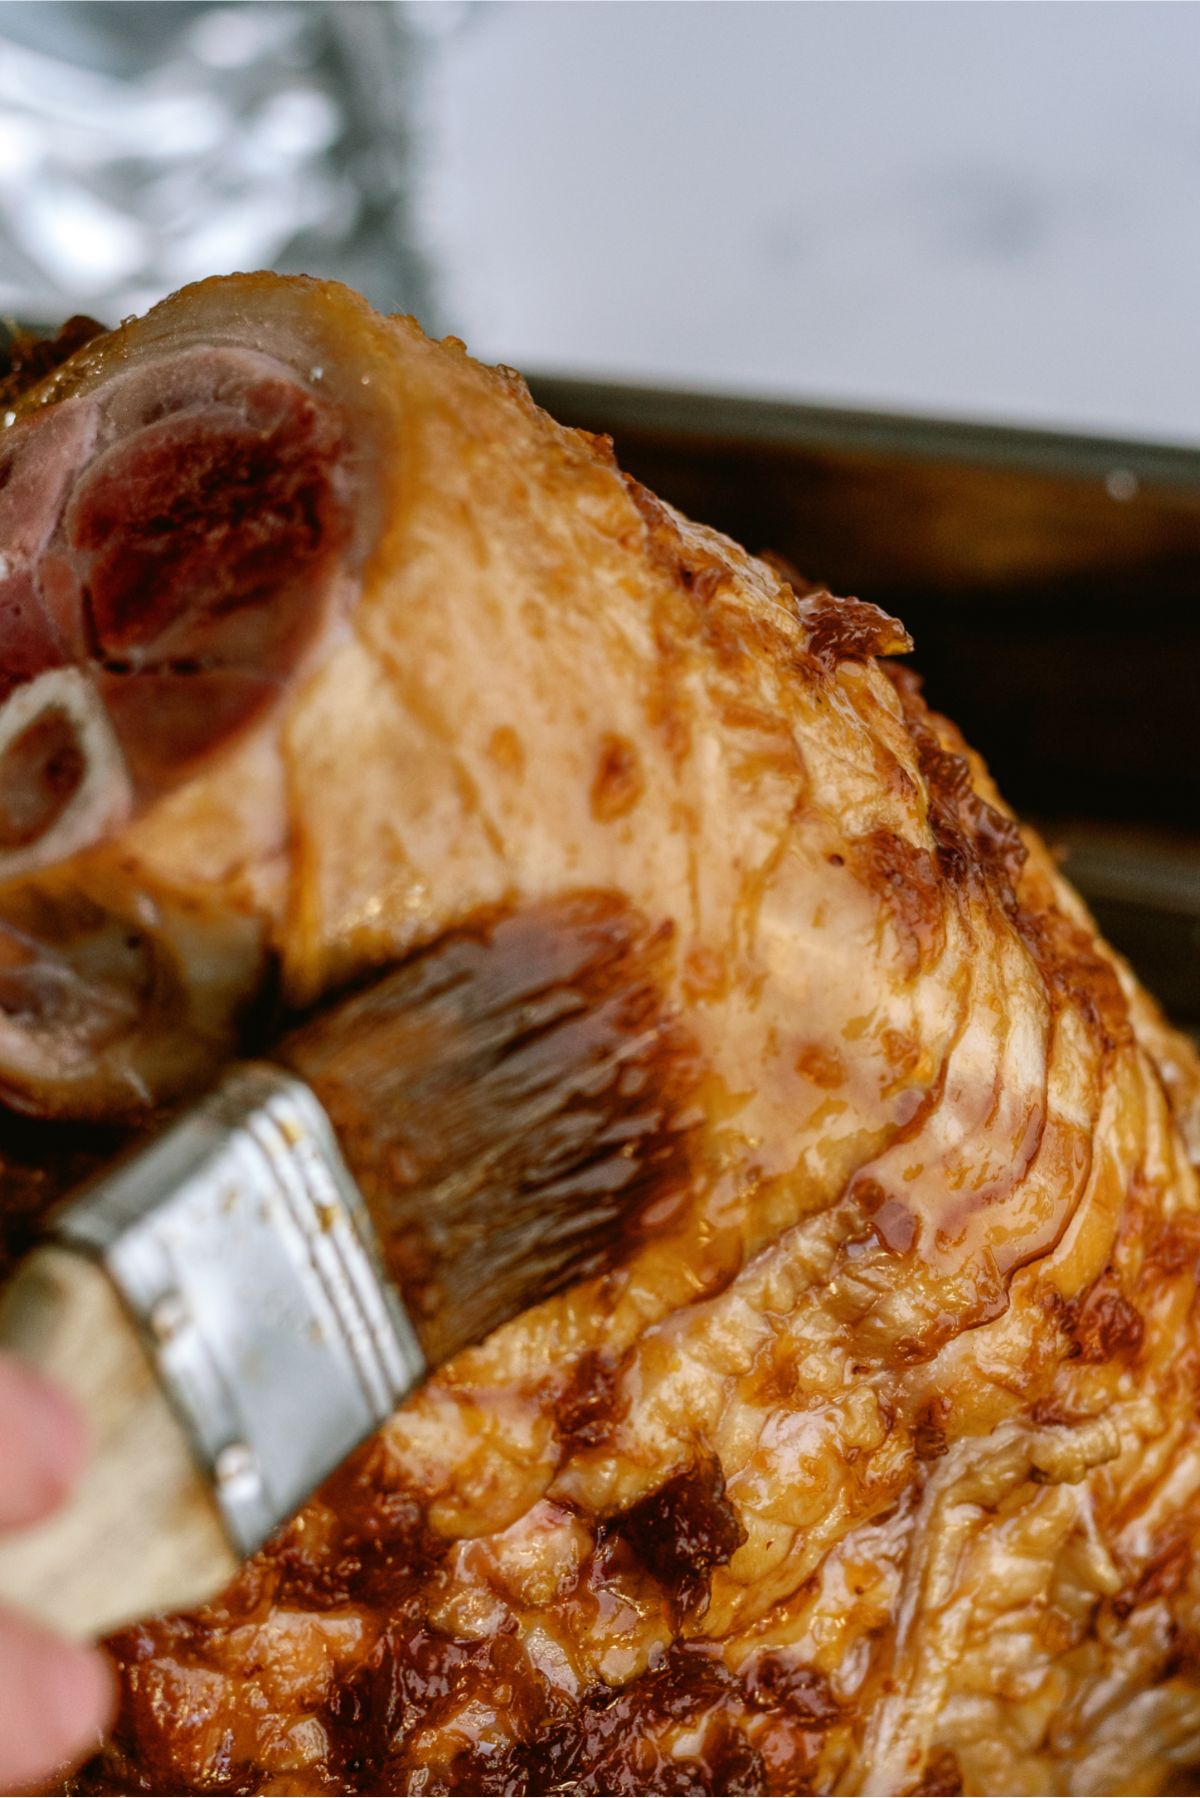 Brushing glaze on baked ham